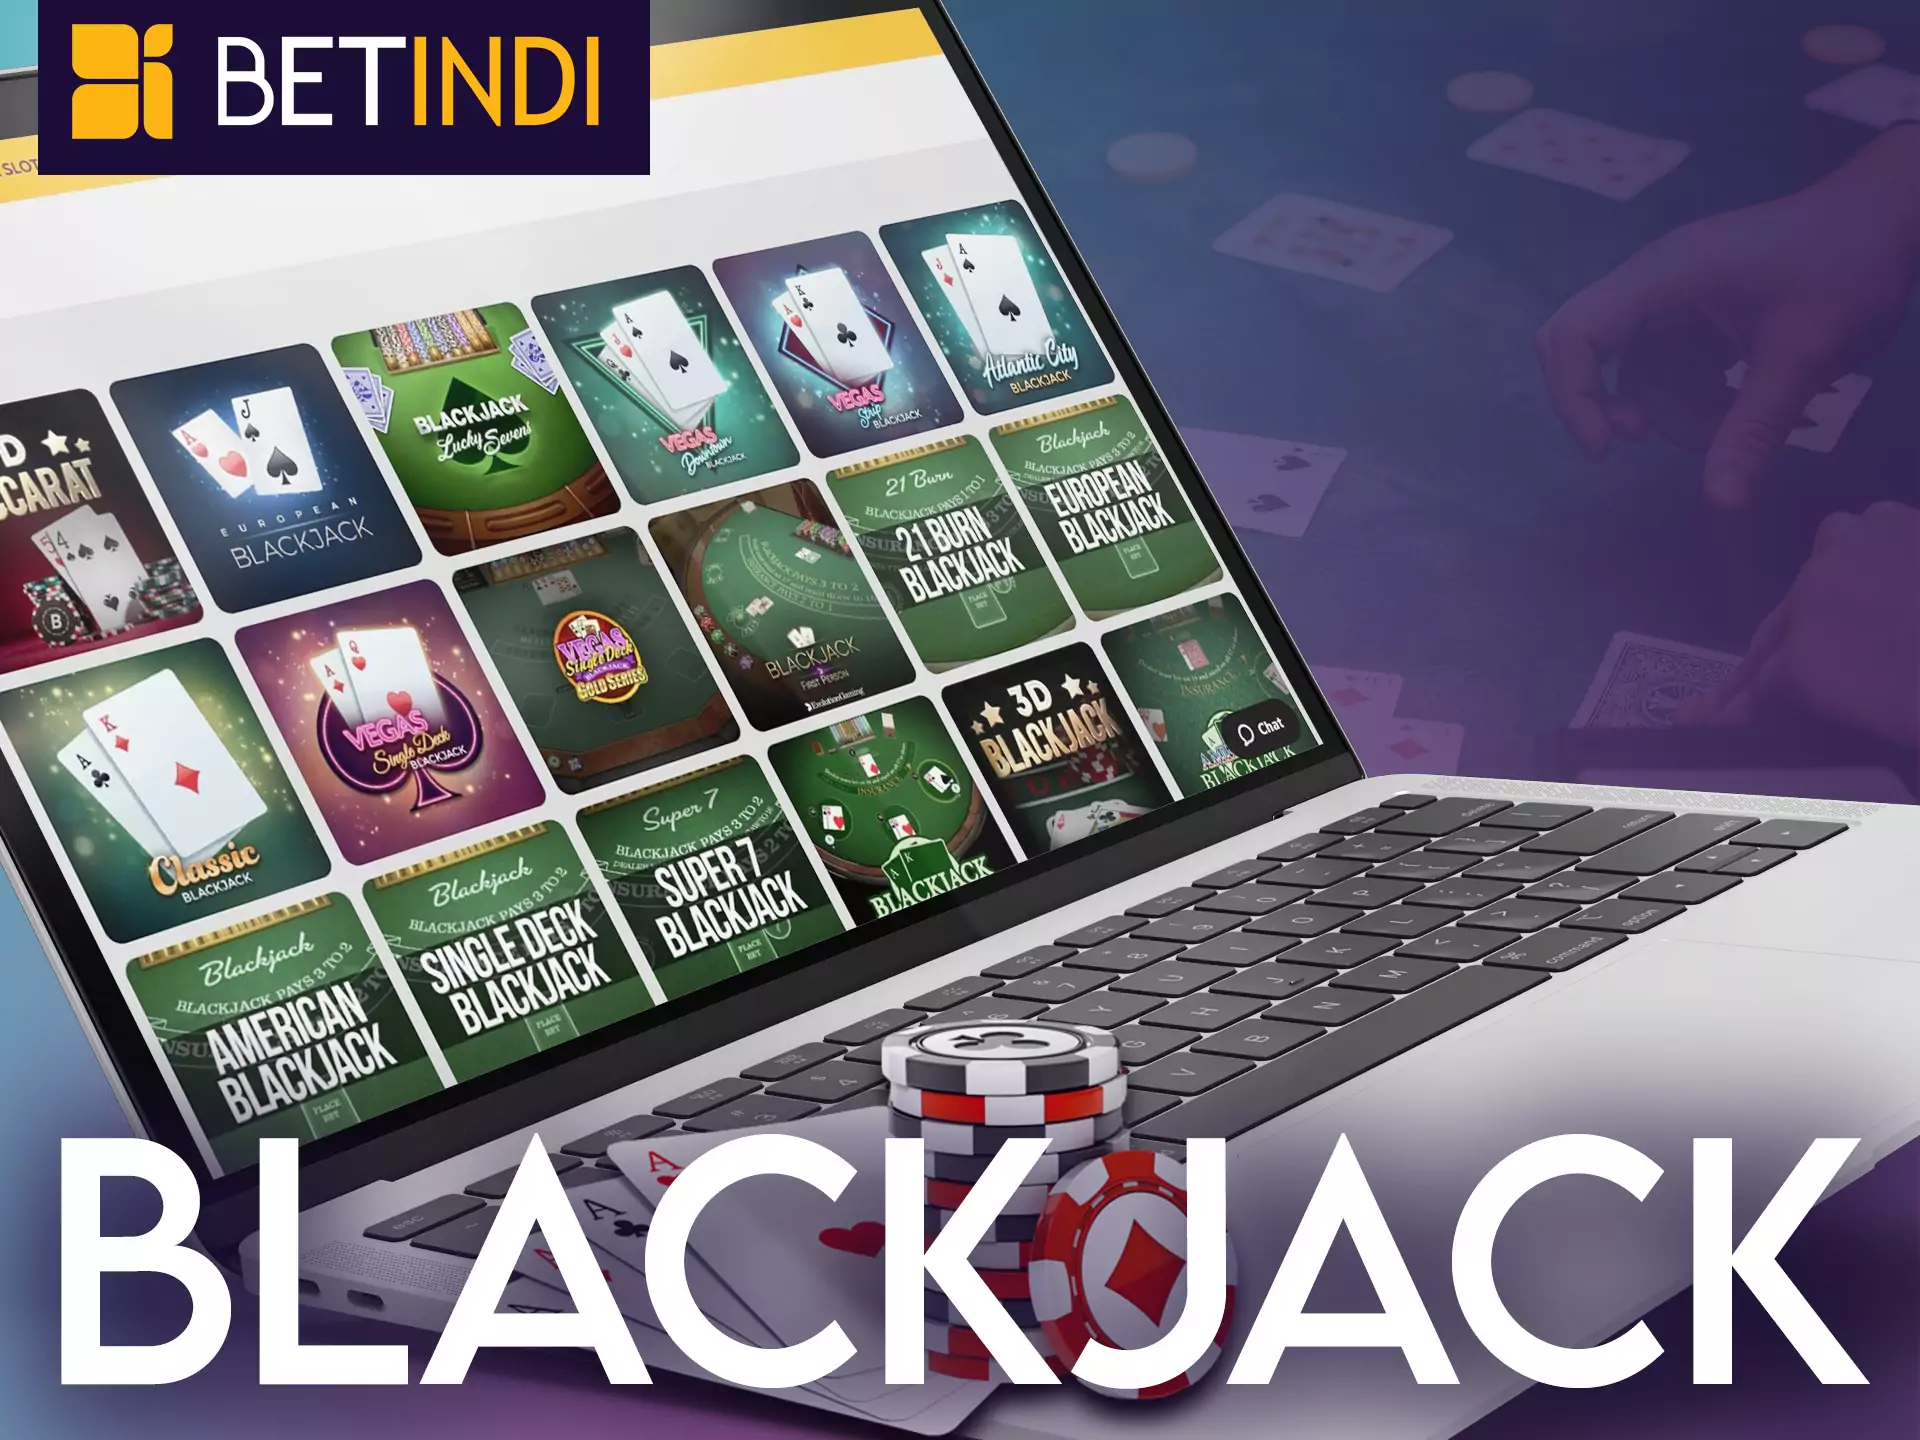 Play blackjack at Betindi Casino.